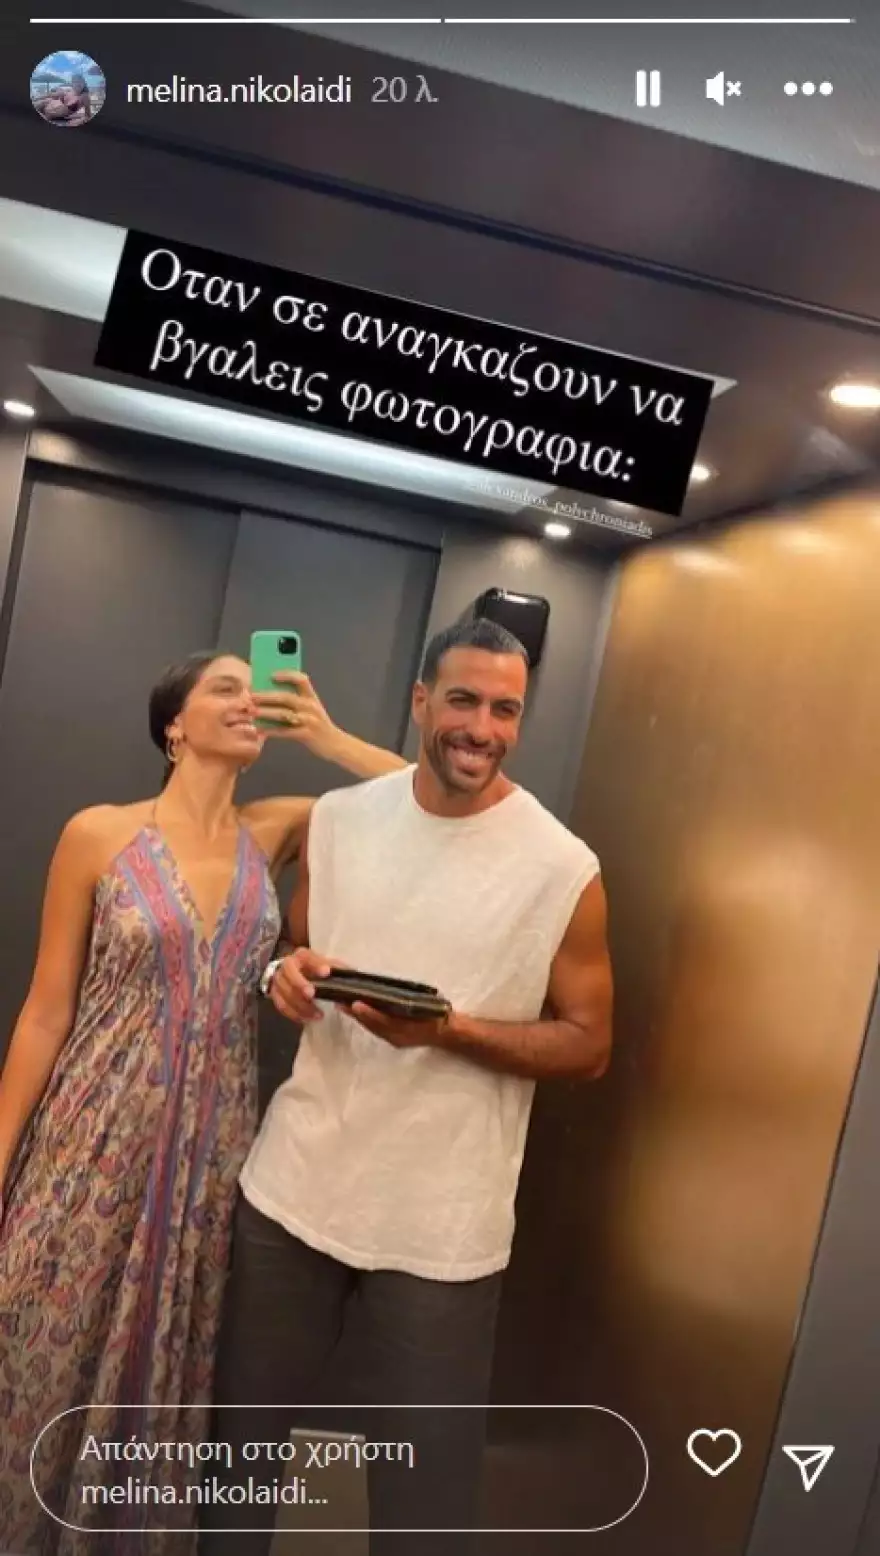 Μελίνα Νικολαΐδη: Ανέβασε μια νέα φωτογραφία με τον σύντροφό της, Αλέξανδρο Πολυχρονιάδη